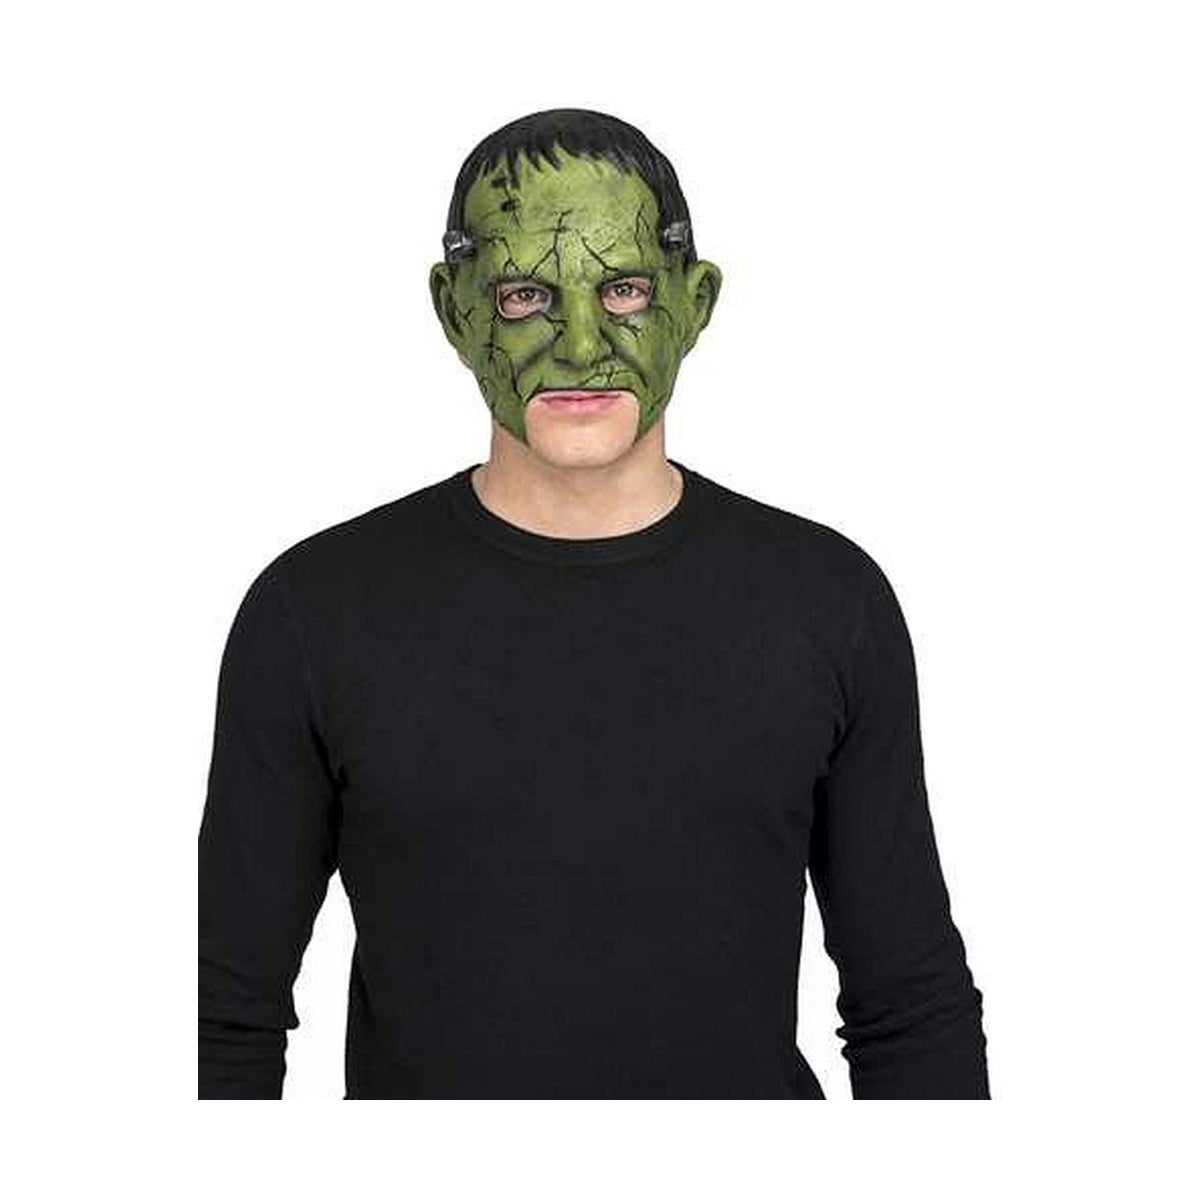 Maske My Other Me Frankenstein grün Einheitsgröße